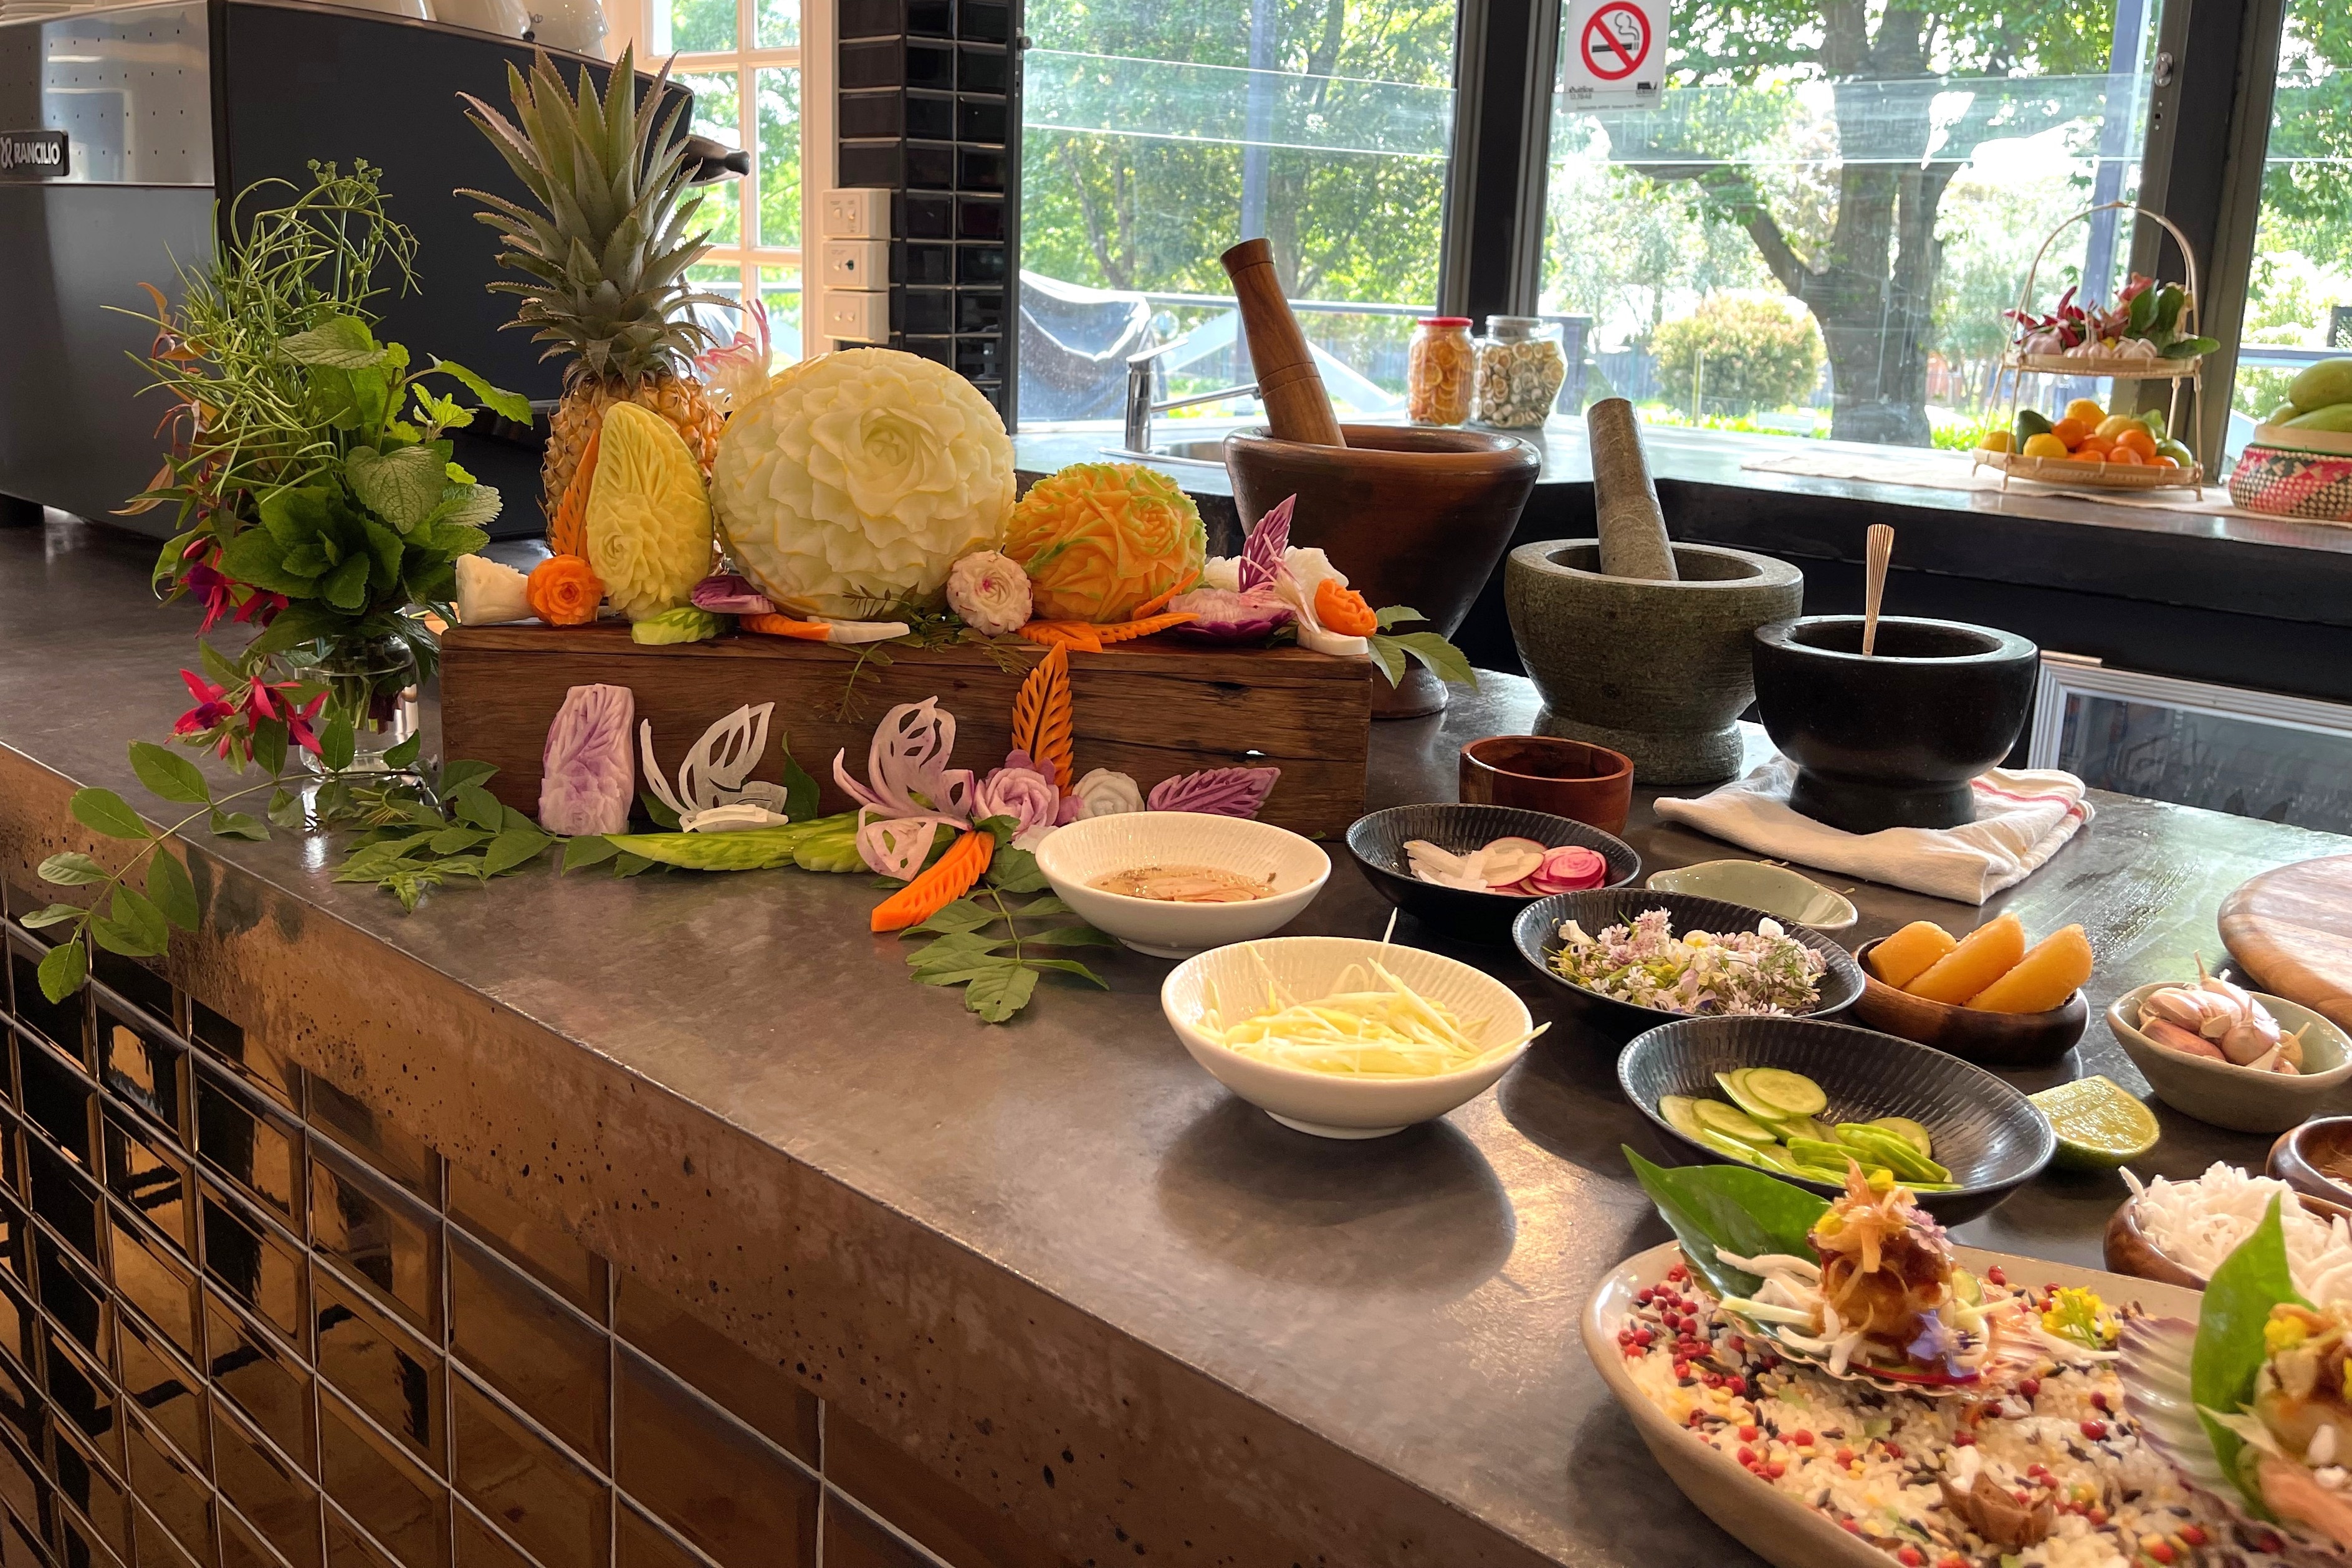 การจัดโต๊ะสาธิตทำอาหารให้มีสีสัน สวยงาม และบ่งชี้ถึงวัฒนธรรมที่ไม่เหมือนใครของคนไทย จะช่วยดึงดูดความสนใจจากผู้ชมการสาธิต